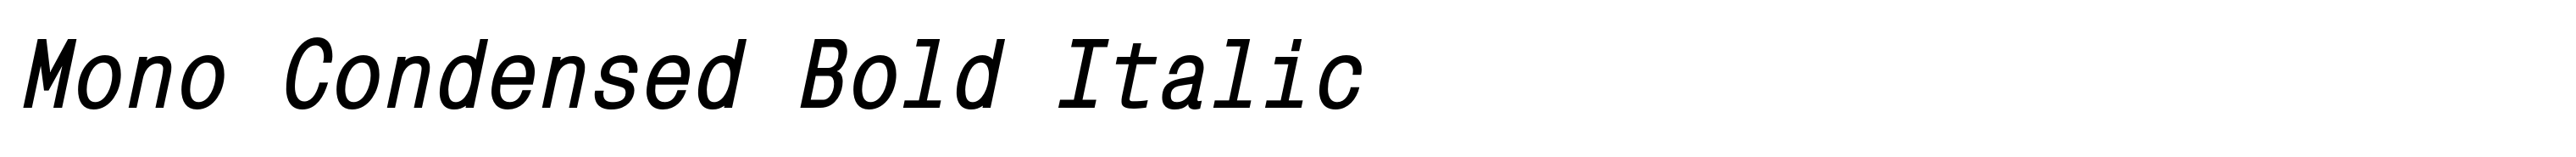 Mono Condensed Bold Italic